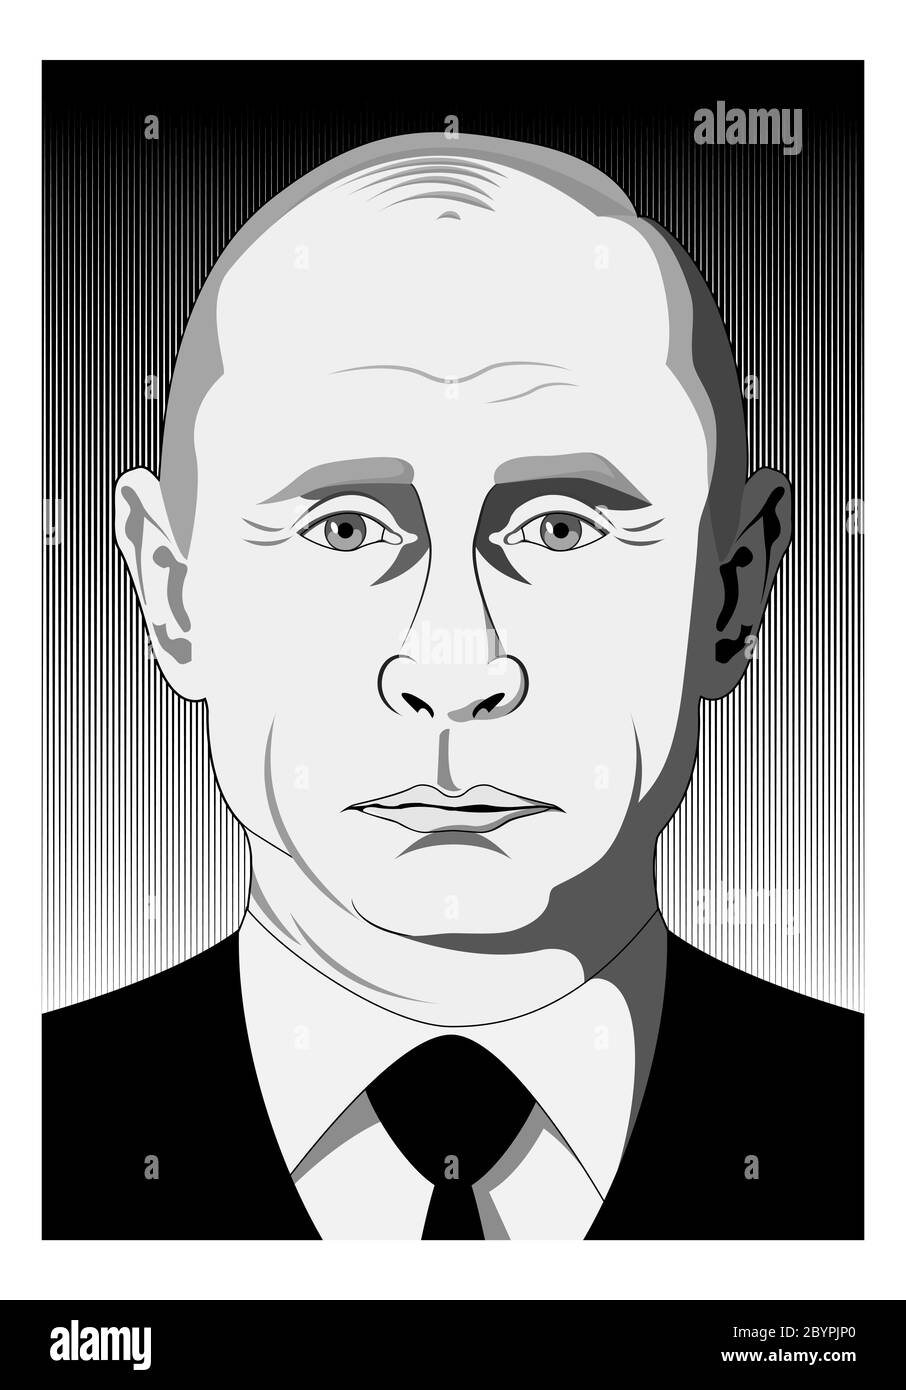 February 01, 2018: President Putin Stock Vector